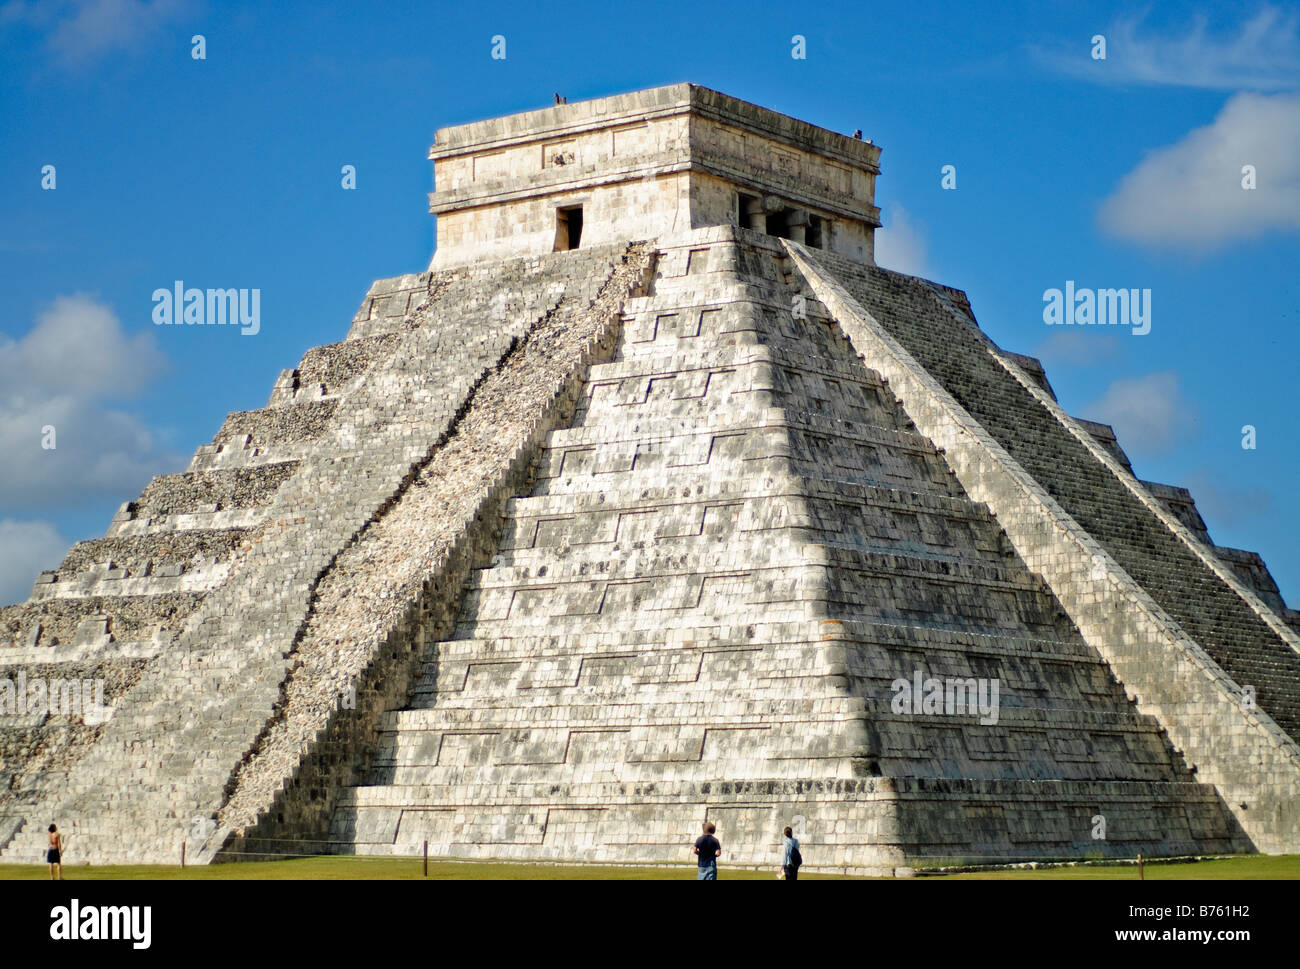 CHICHEN ITZA, Mexique - El Castillo (également connu sous le nom de Temple de Kuklcan) aux ruines mayas anciennes de Chichen Itza, Yucatan, Mexique 081216094230 1949x.tif. Chichen Itza, situé sur la péninsule du Yucatan au Mexique, est un site archéologique important présentant la riche histoire et les connaissances scientifiques avancées de la civilisation maya antique. Il est plus connu pour la Pyramide Kukulkan, ou « El Castillo », une structure à quatre côtés avec 91 marches de chaque côté, culminant en une seule étape au sommet pour représenter les 365 jours de l'année solaire. Banque D'Images